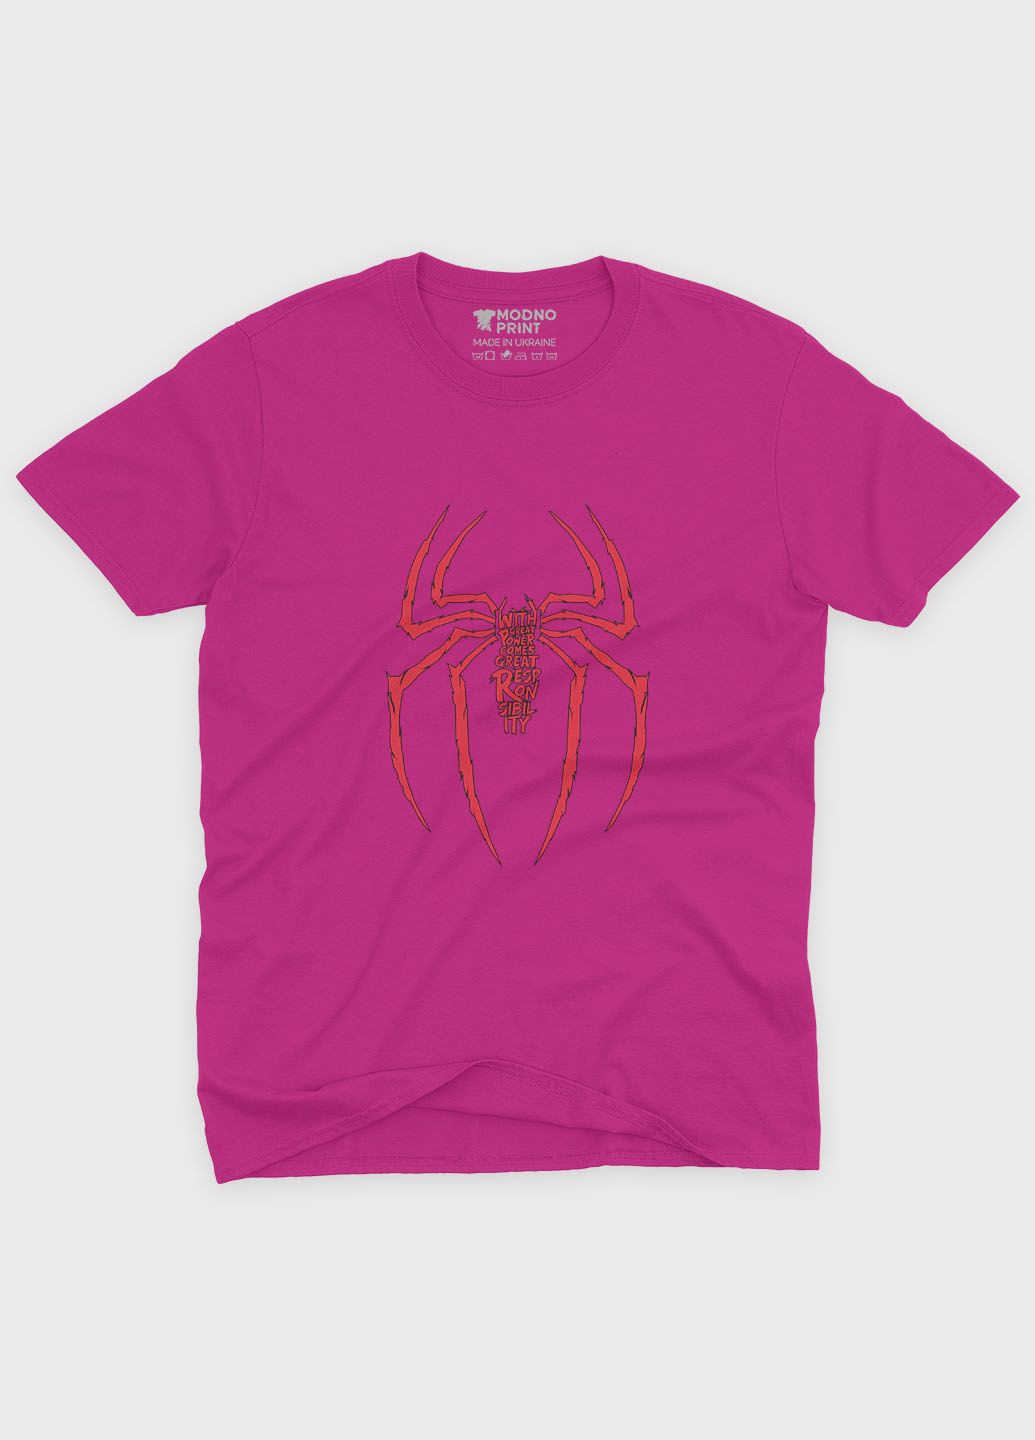 Рожева демісезонна футболка для хлопчика з принтом супергероя - людина-павук (ts001-1-fuxj-006-014-046-b) Modno